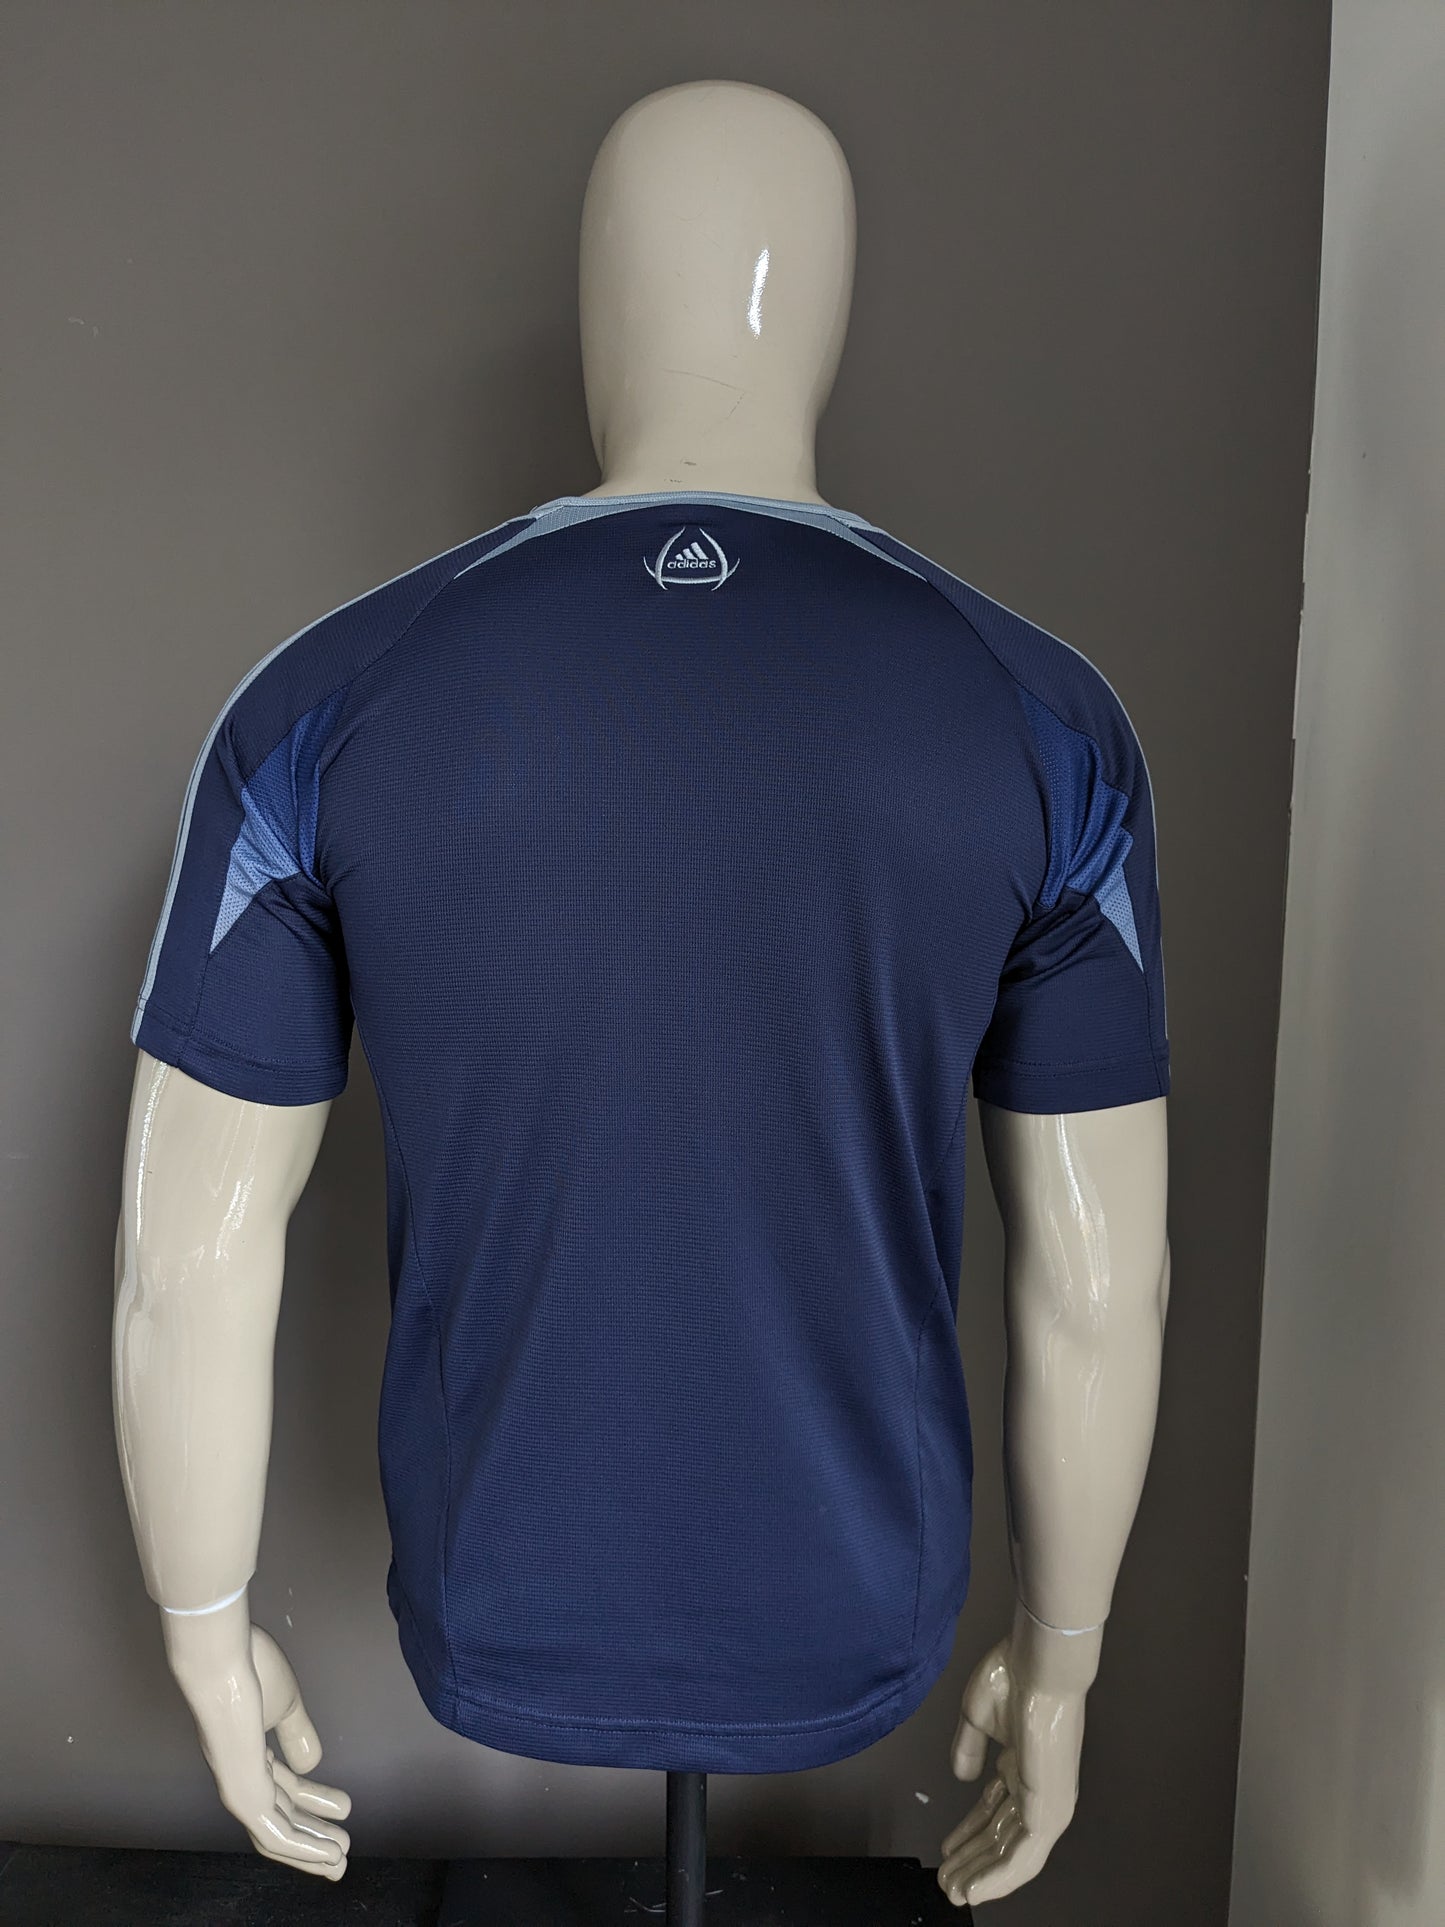 Adidas sport shirt. Blauw gekleurd. Maat S.